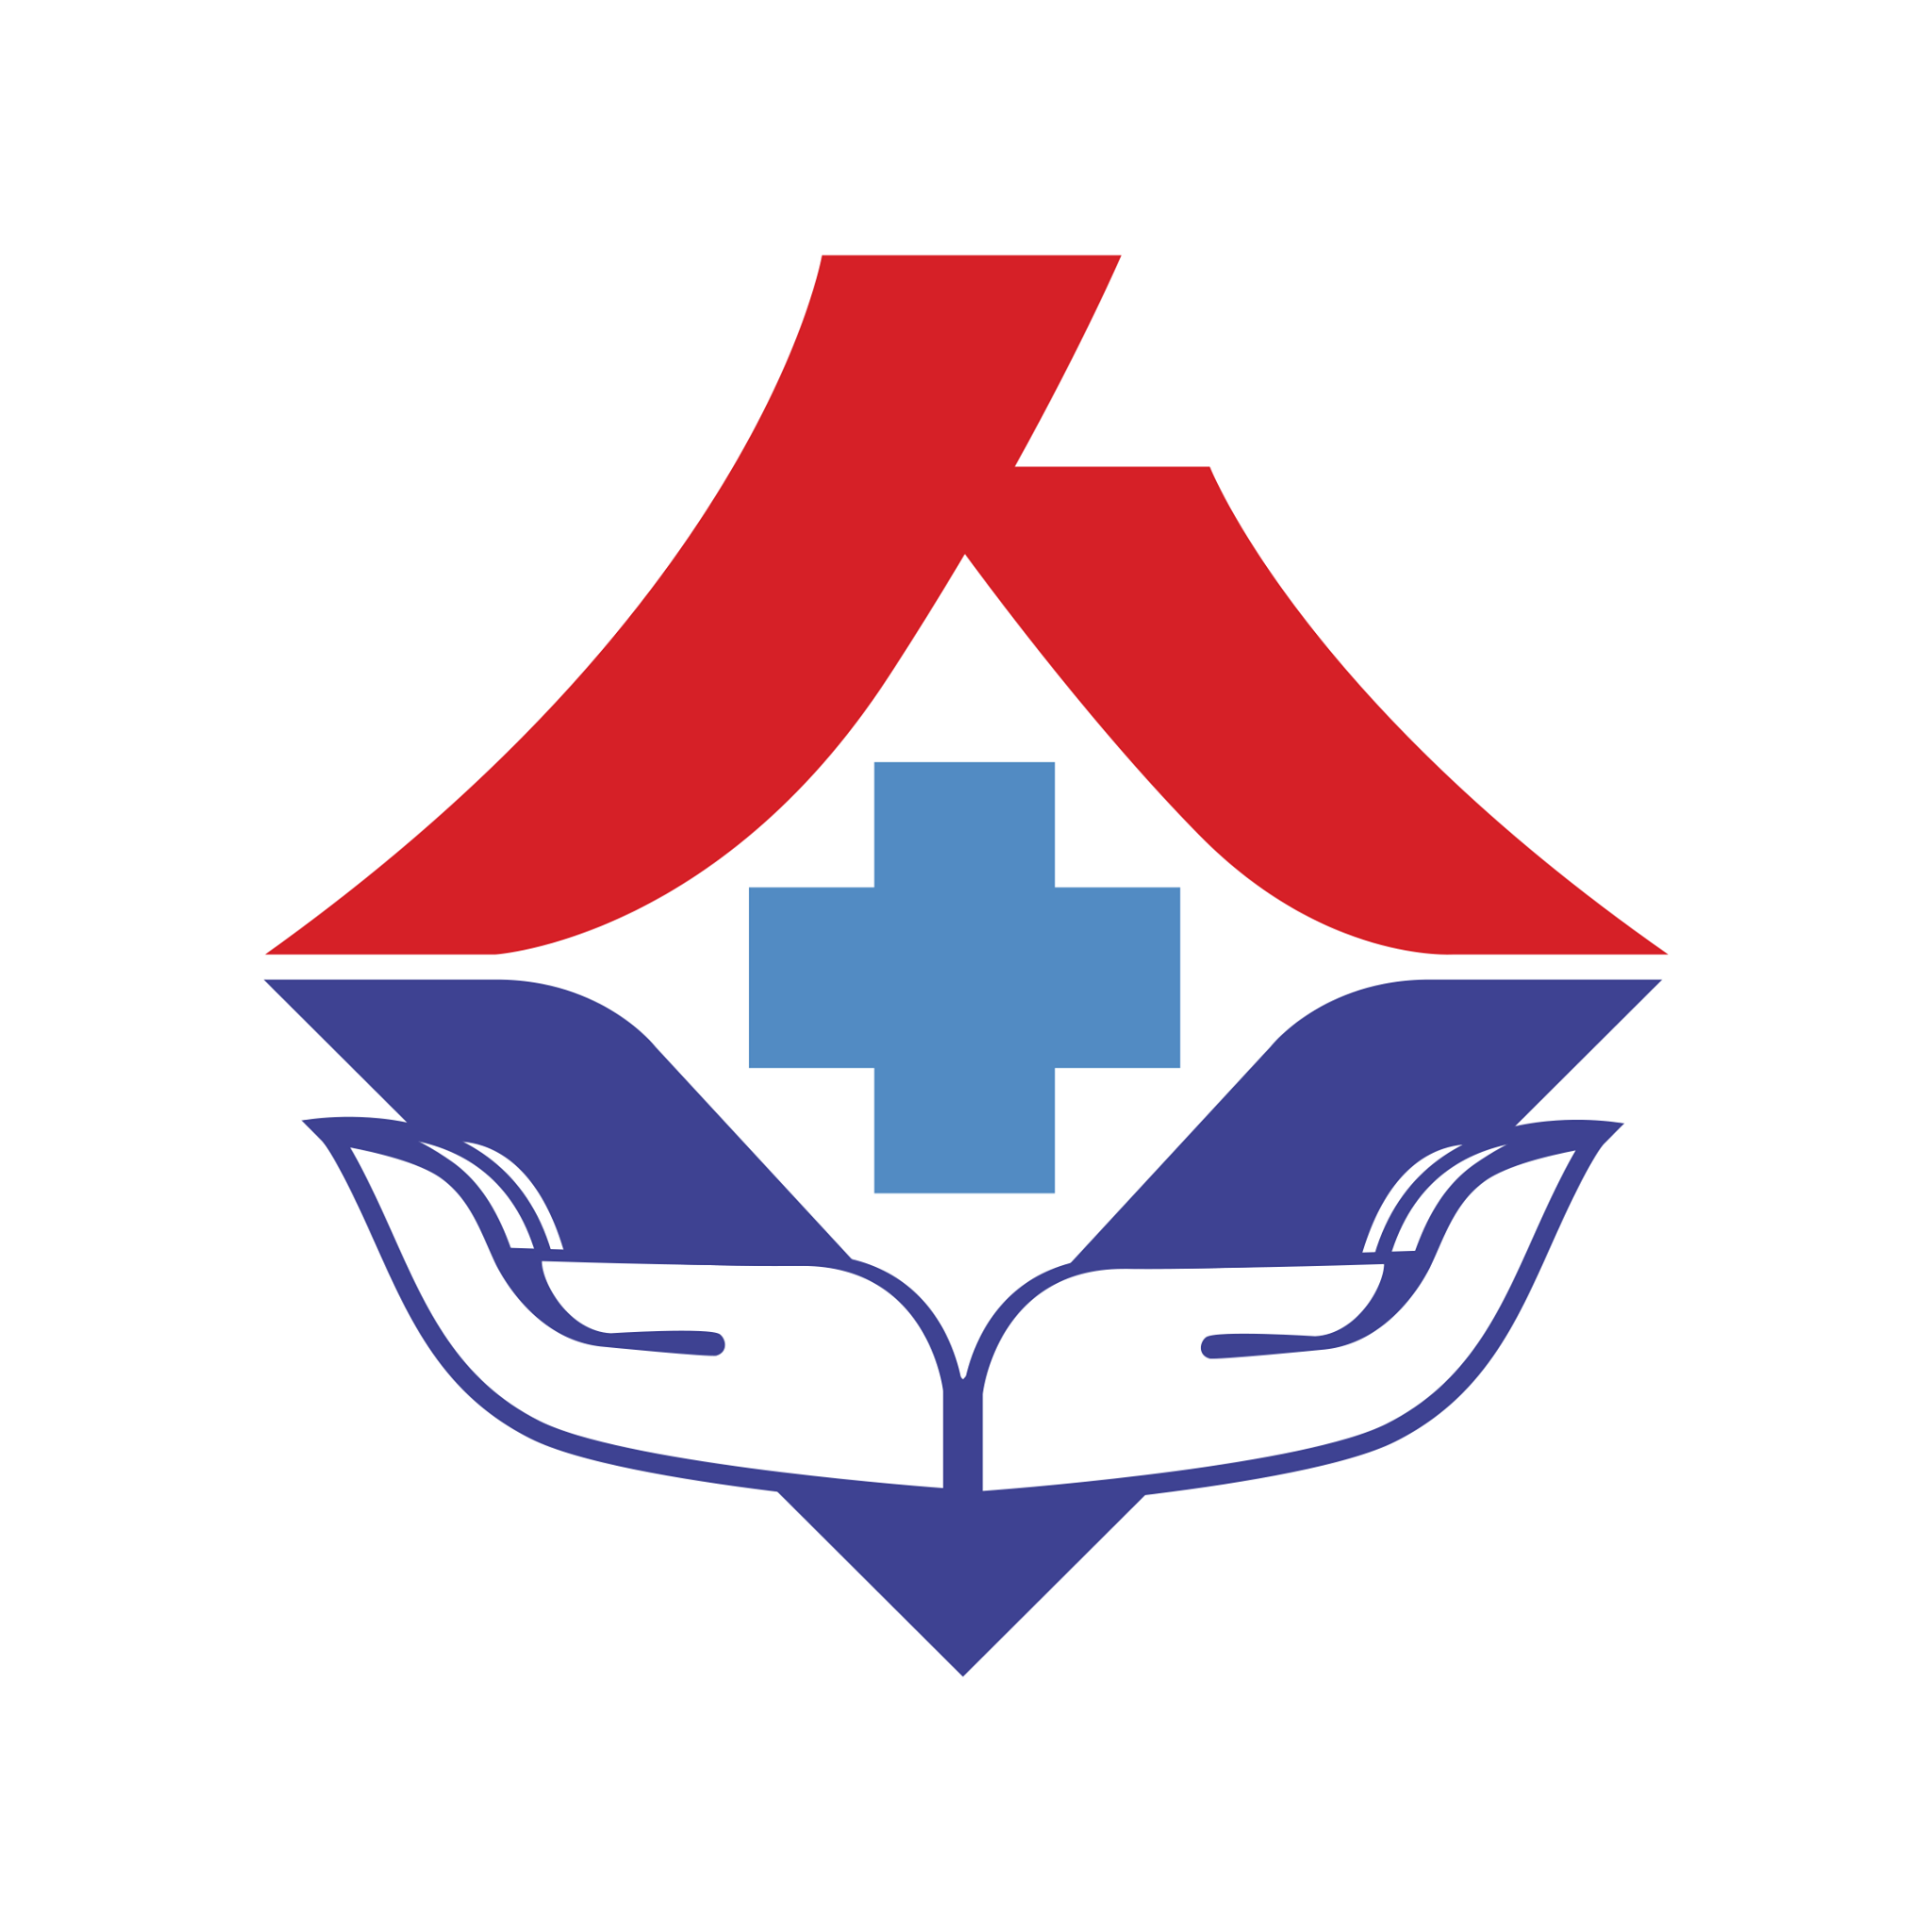 Bệnh Viện Đa Khoa An Việt